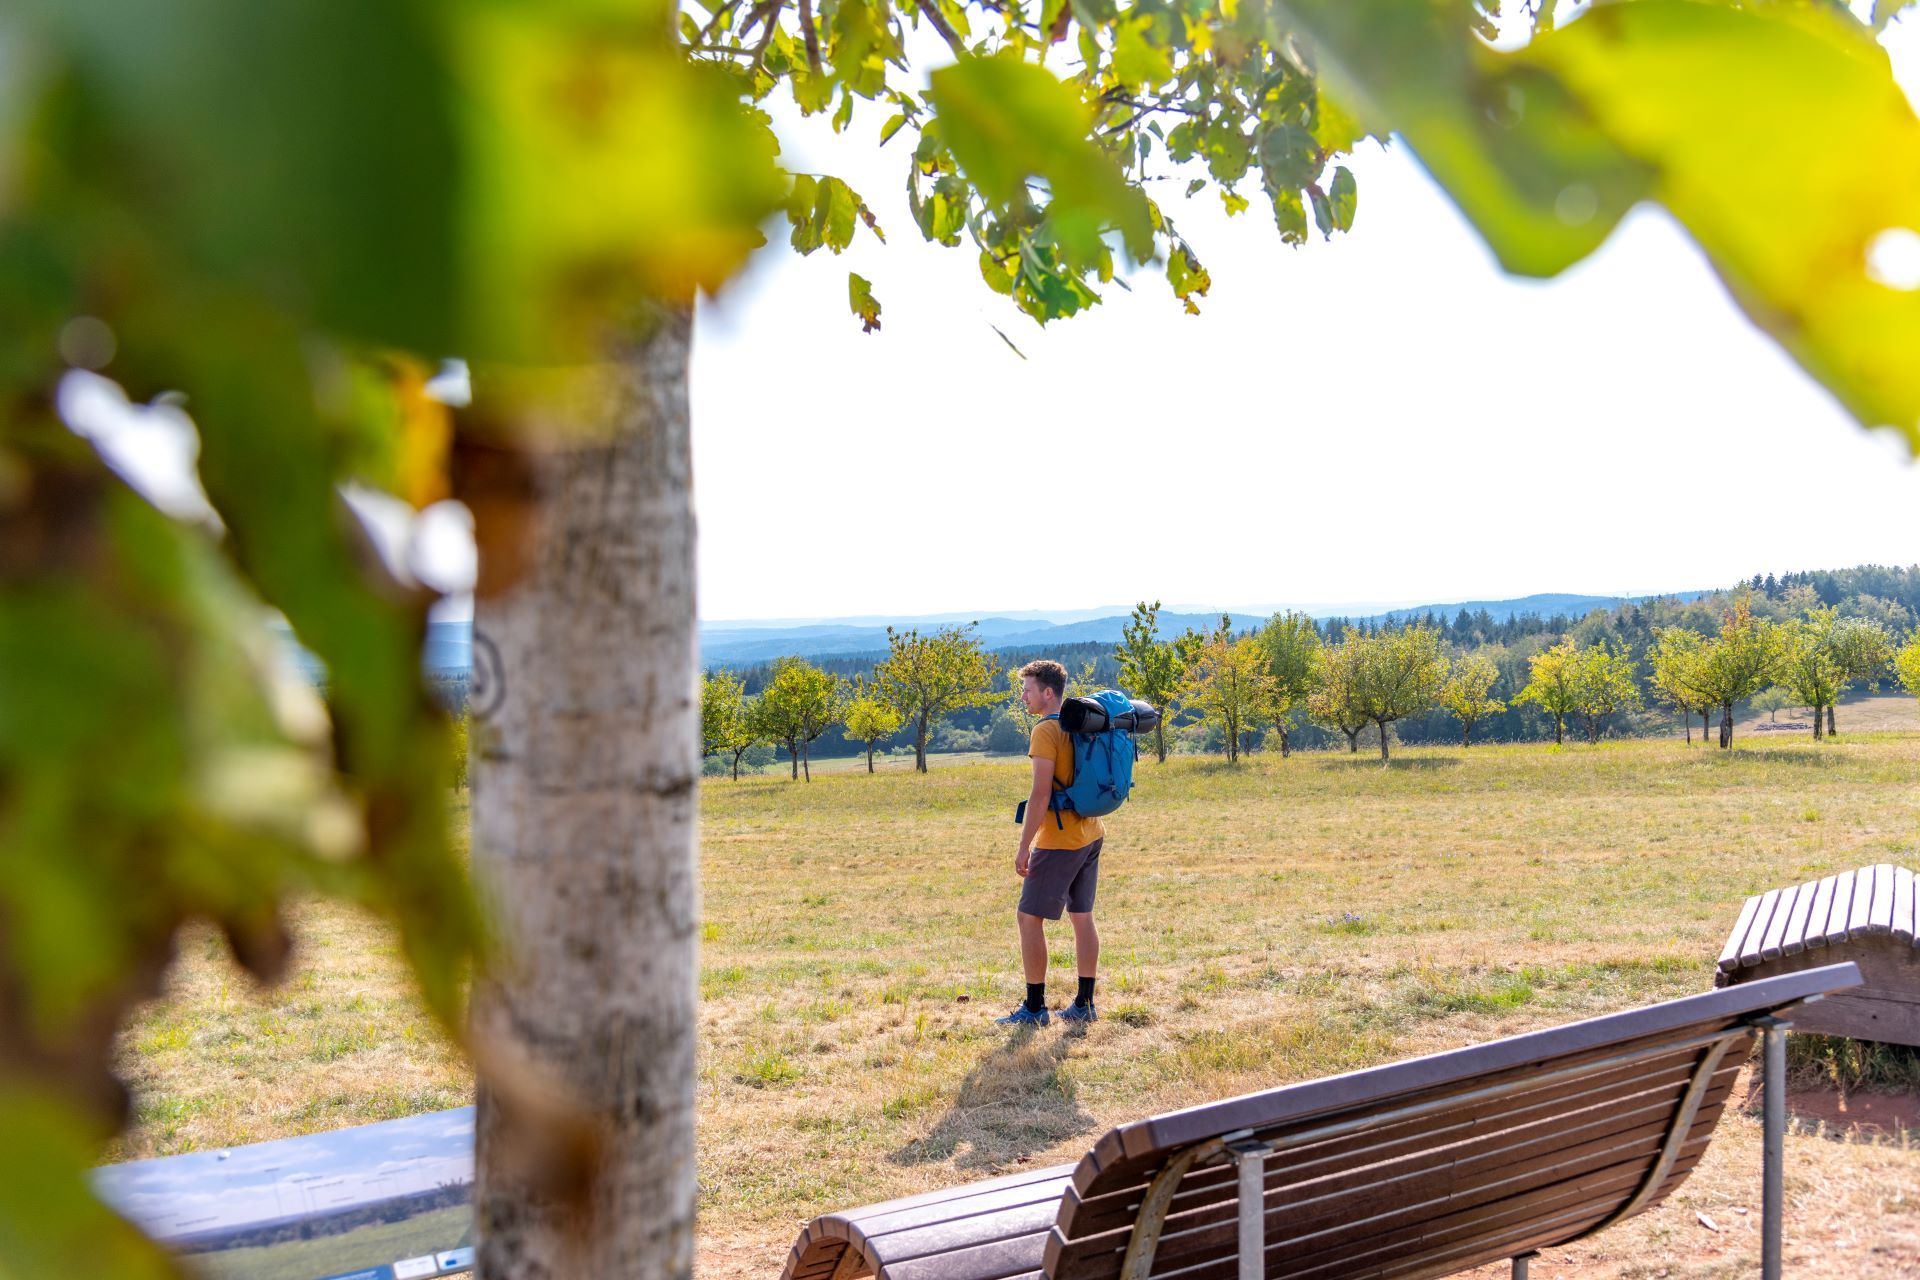 Un homme portant une chemise jaune et un équipement de randonnée se tient dans un champ, devant plusieurs bancs où les randonneurs peuvent se reposer. Au premier plan, un arbre bloque le côté gauche de l'image.